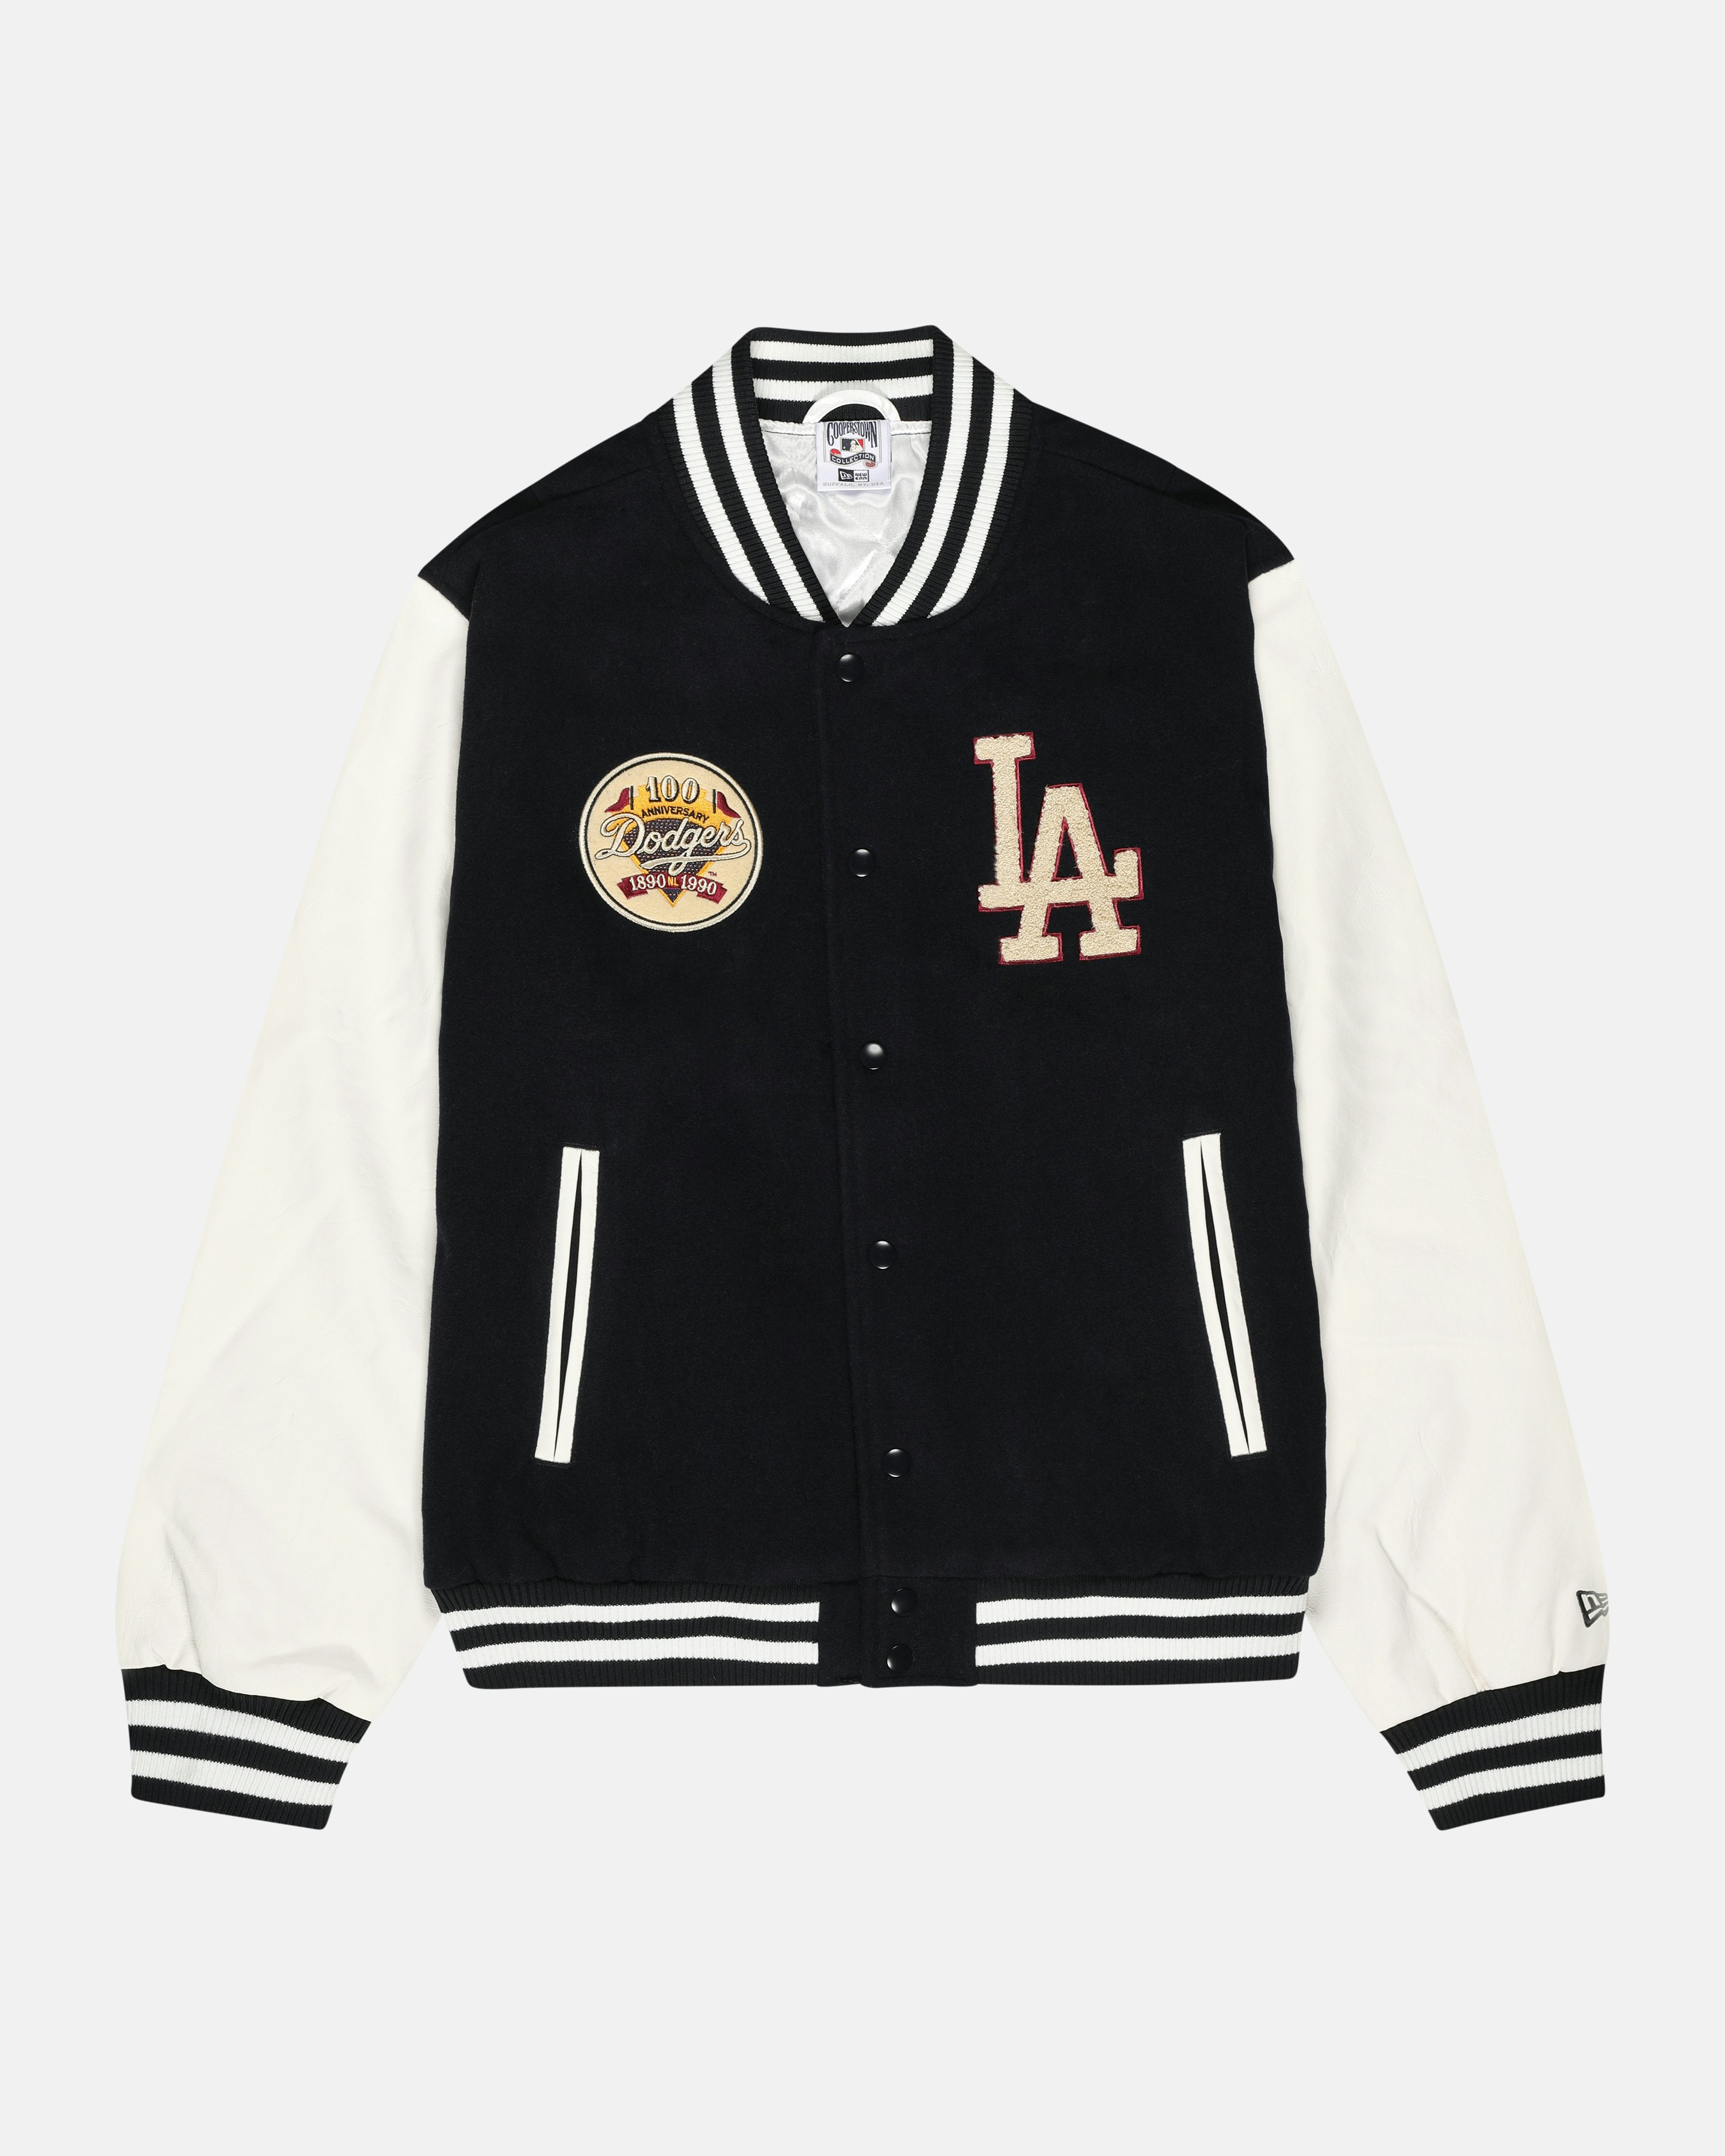 Vintage LA Dodgers Team Blue And White Varsity Jacket - Maker of Jacket